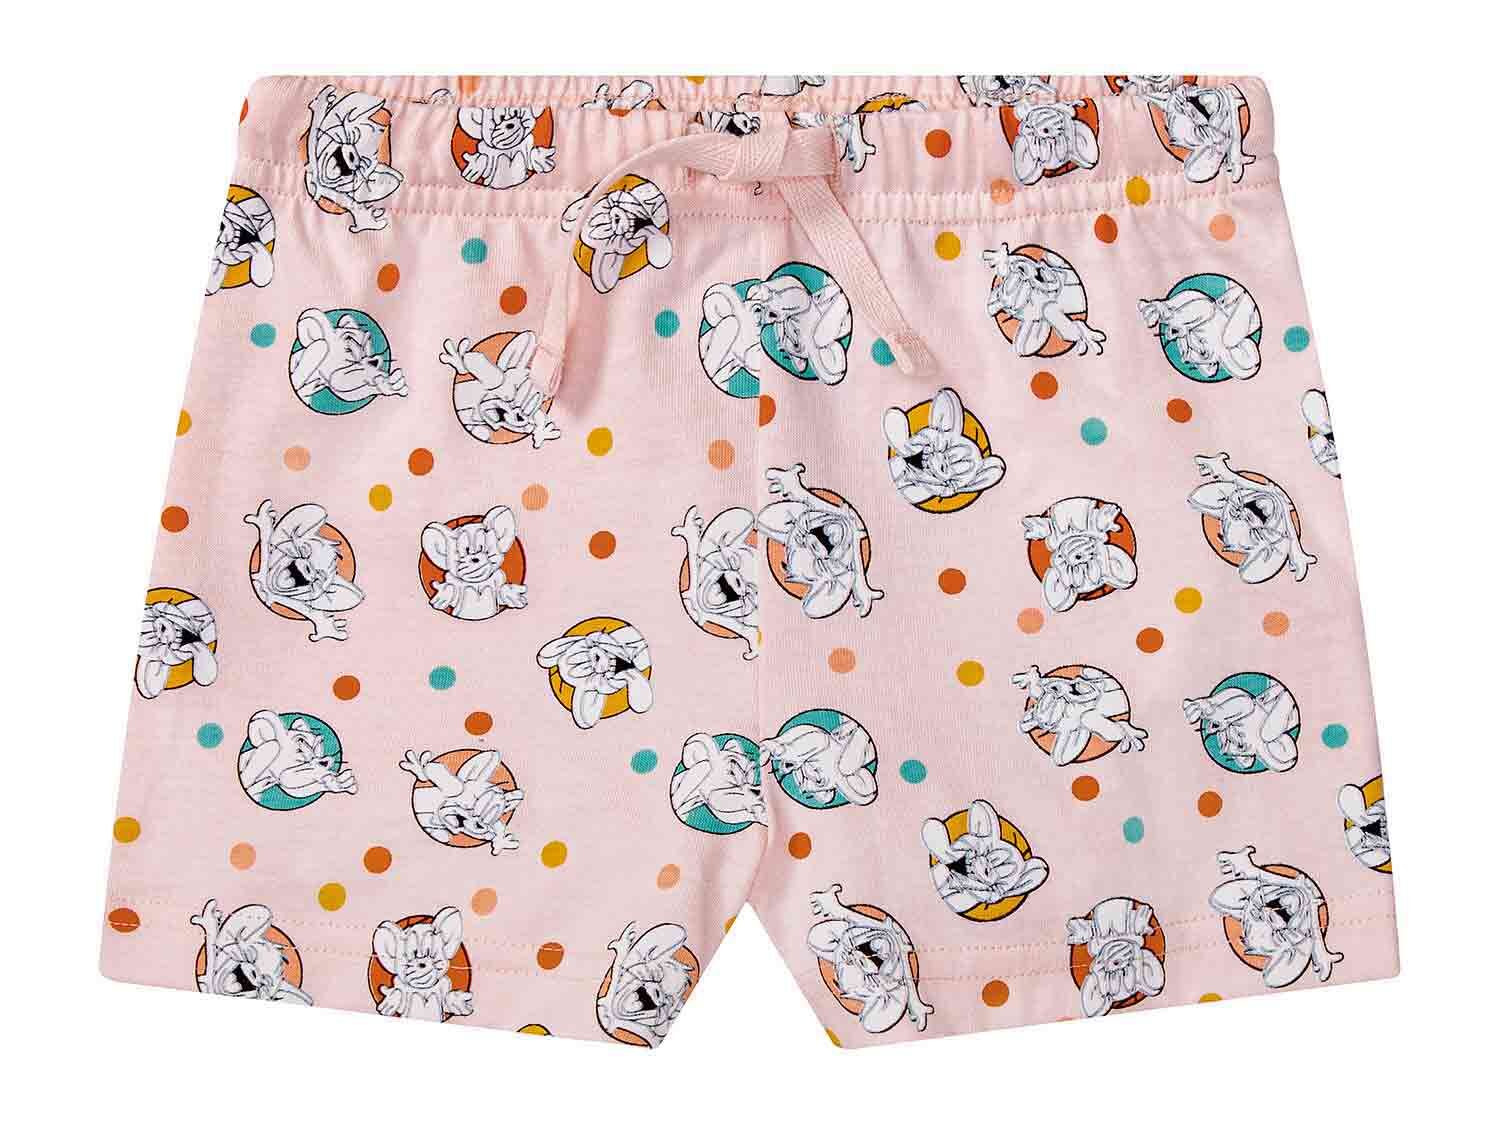 Pantalón corto de pijama infantil de licencia